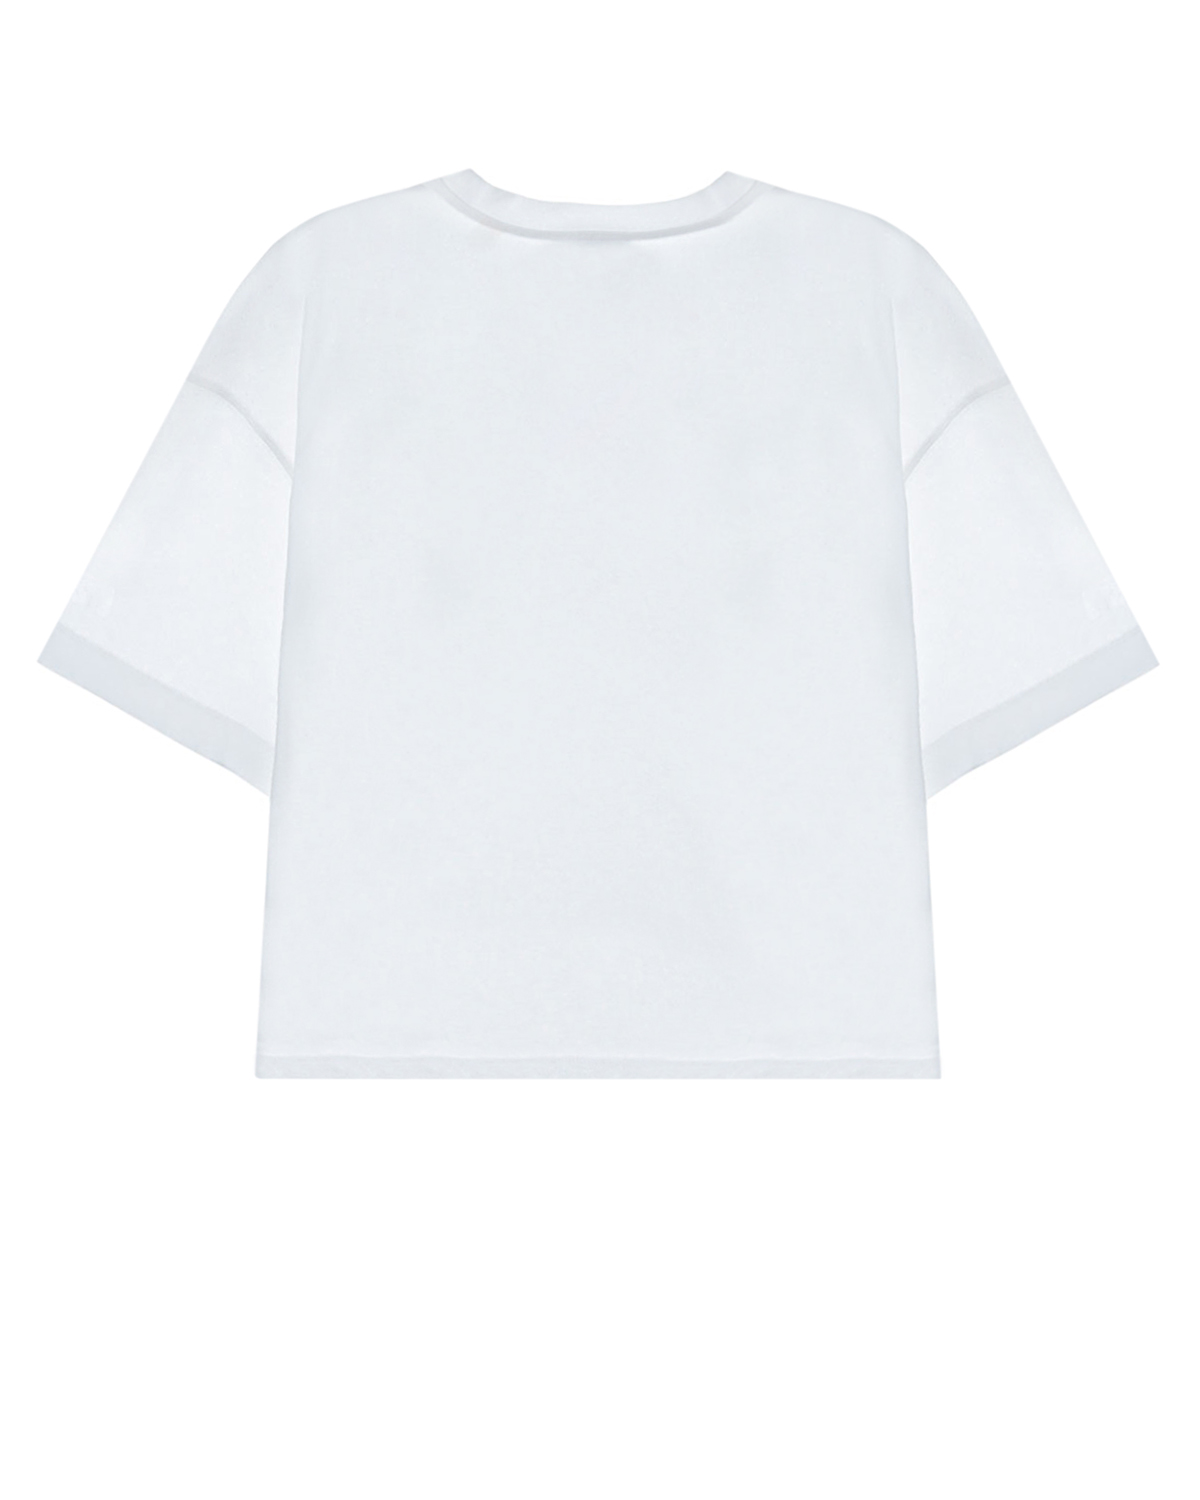 Белая футболка с принтом "Cruise Crew" Les Coyotes de Paris детская, размер 152, цвет белый - фото 2